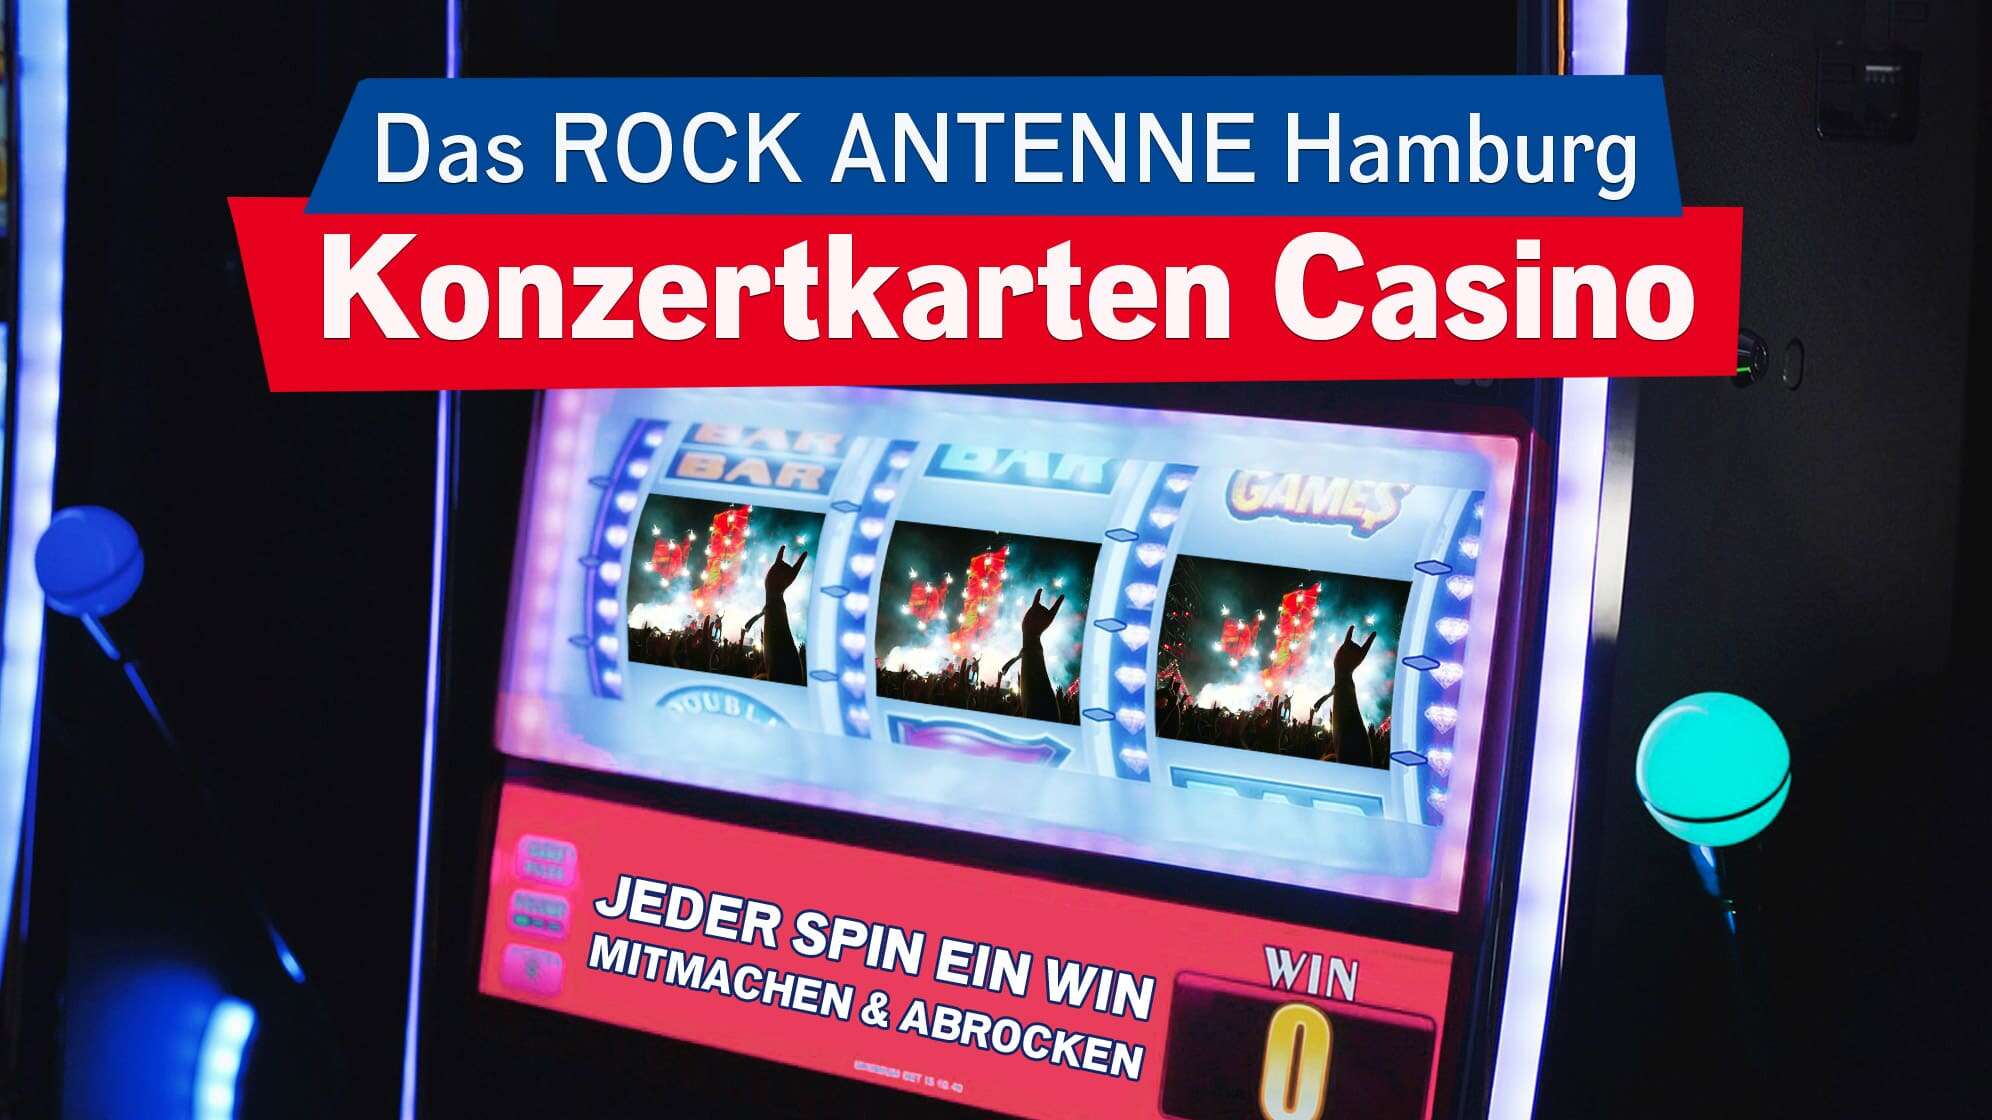 Nahaufnahme des Bildschirms eines Spielautomaten, darauf zu sehen sind drei Fotos von einem Konzert in einer Reihe, dazu der Text: Das ROCK ANTENNE Hamburg Konzertkarten Casino - jeder Spin ein Win - mitmachen & abrocken